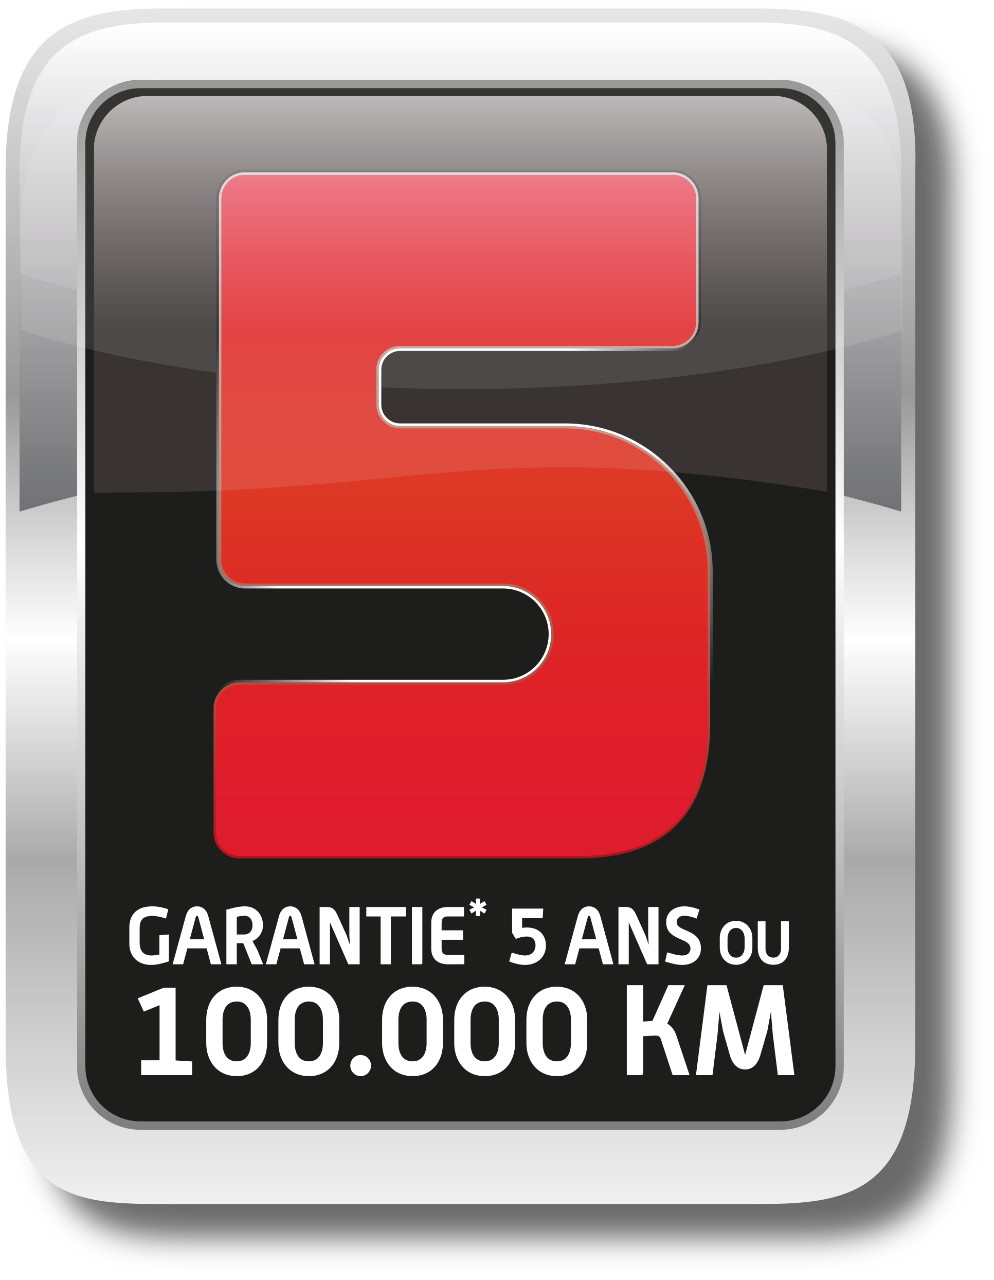 Service + : GARANTIE 5 ans ou 100 000 km depuis le 16 novembre 2015. Extension de garantie 36 mois soumise à restrictions, consultez votre Distributeur Agréé Sym.